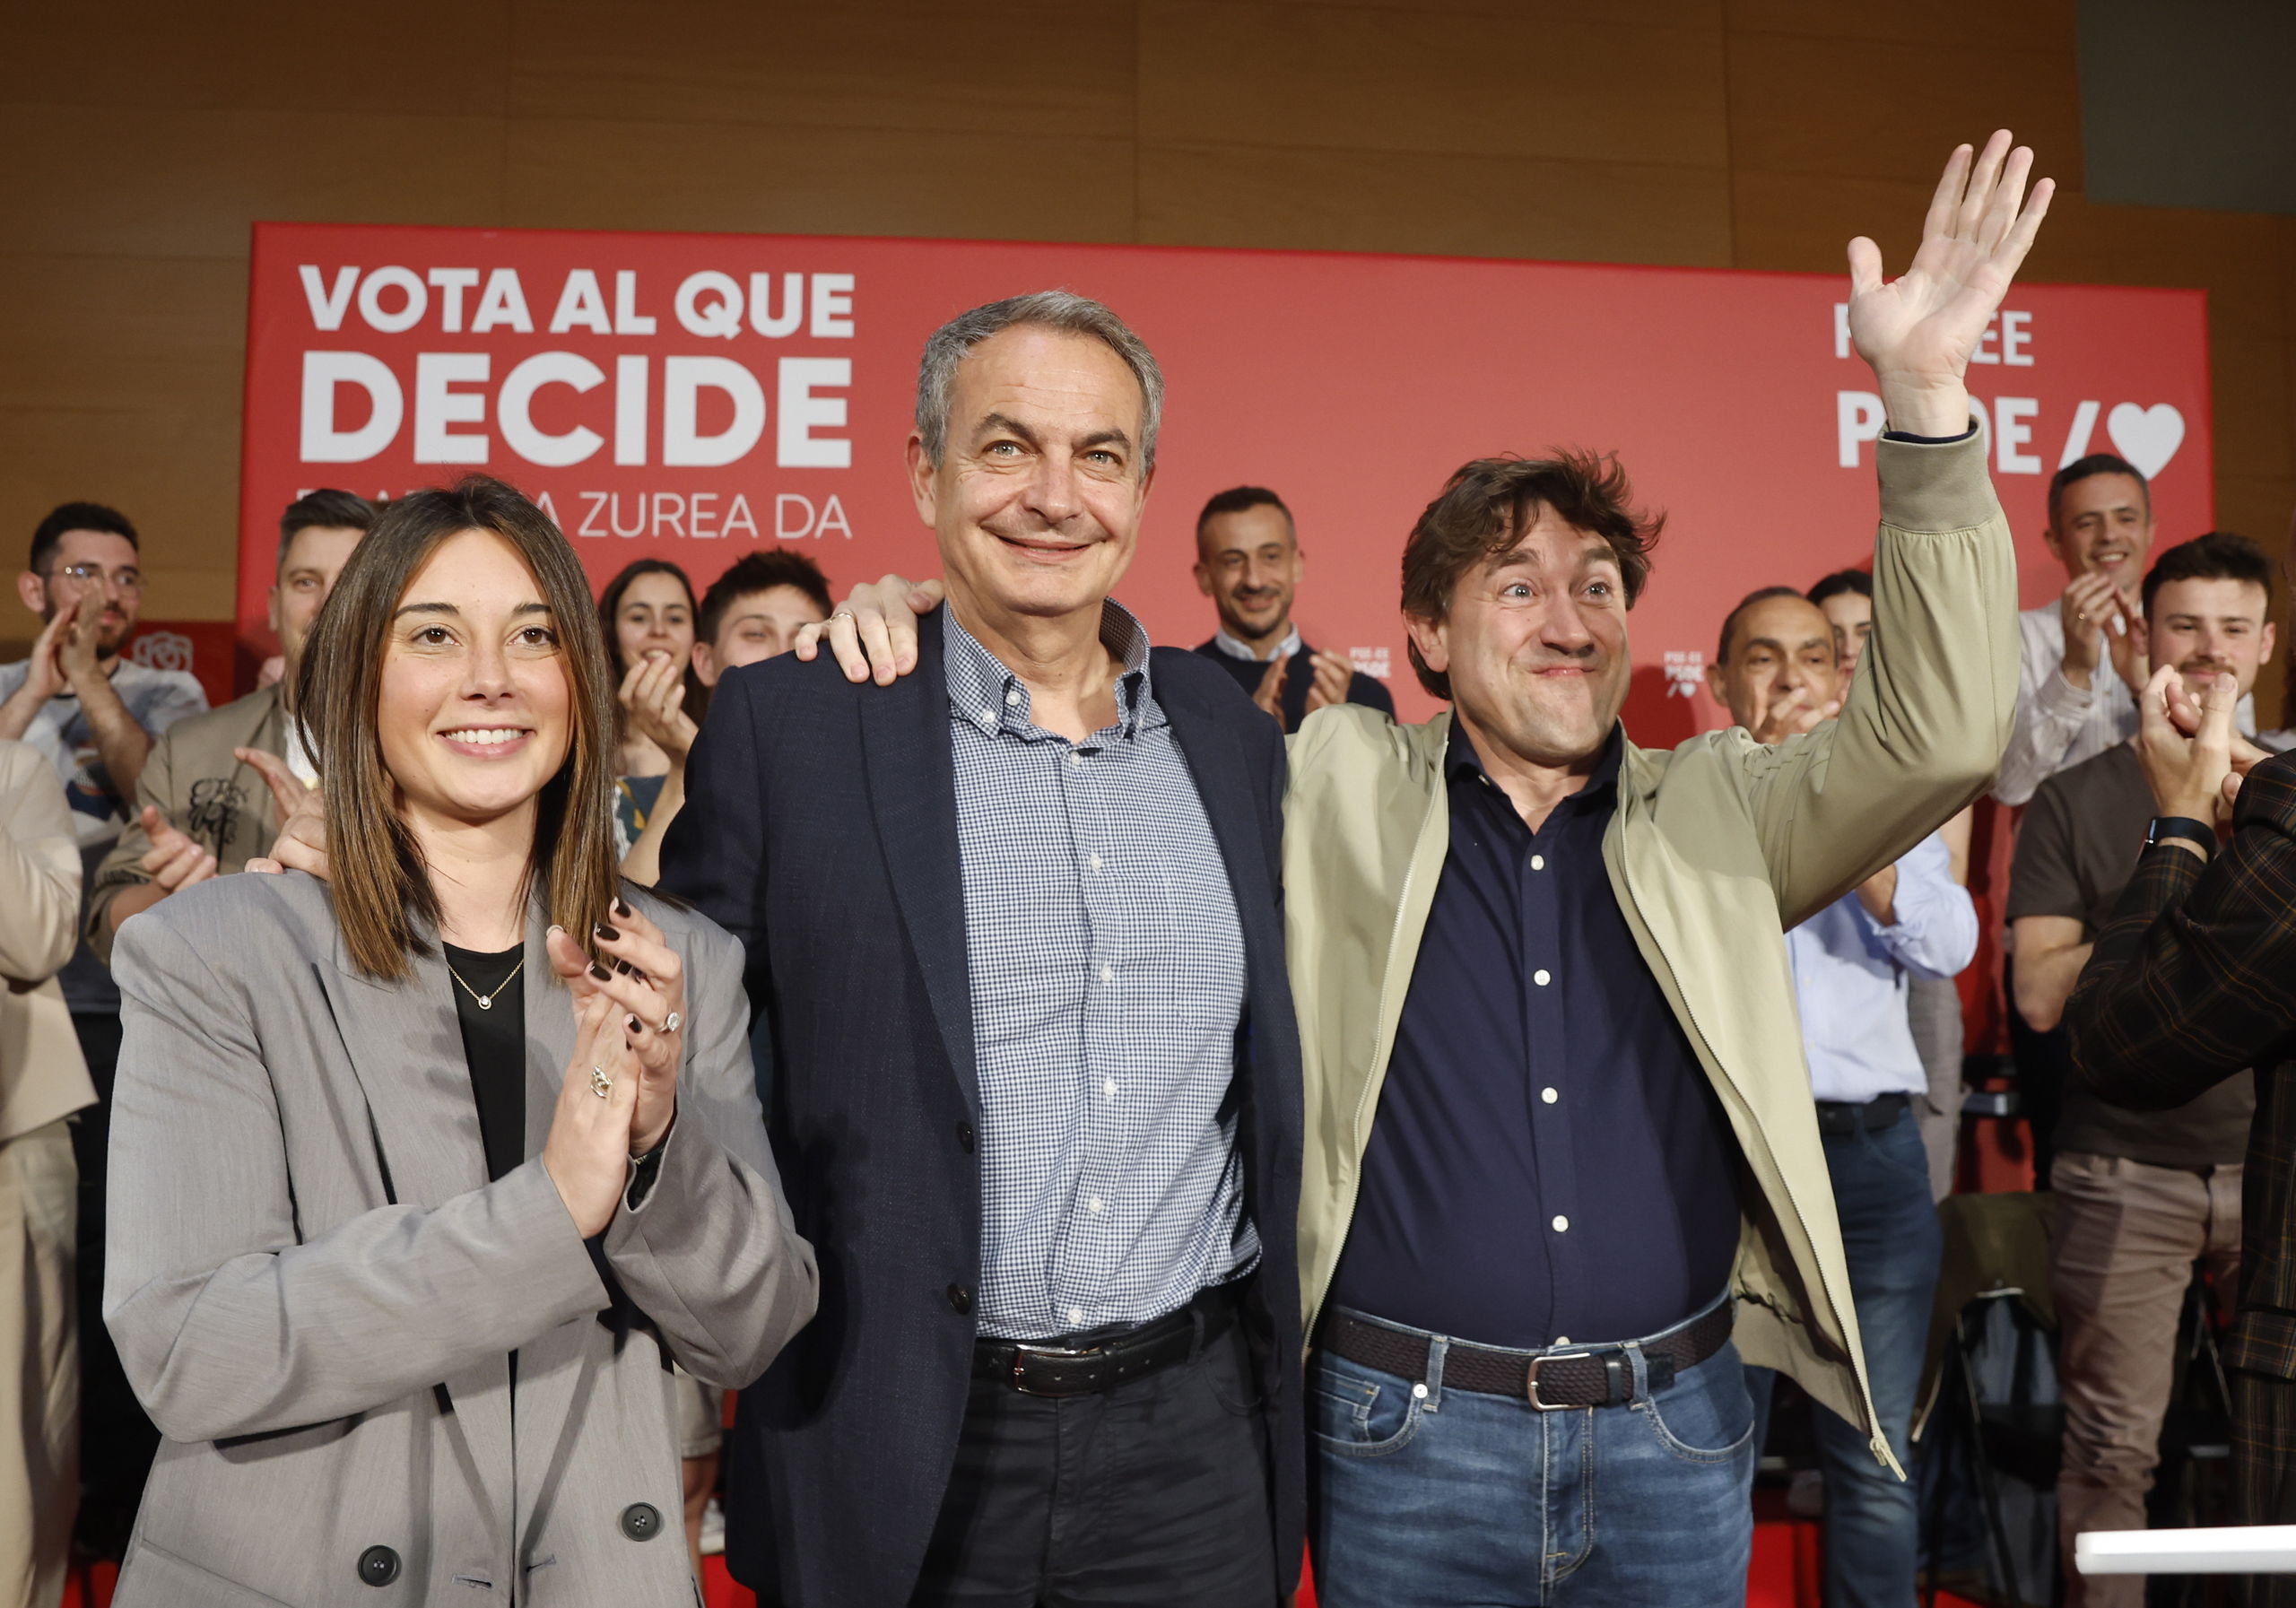 Zapatero saca el caso Begoña Gómez en campaña y acusa al PP de practicar "la antipolítica"